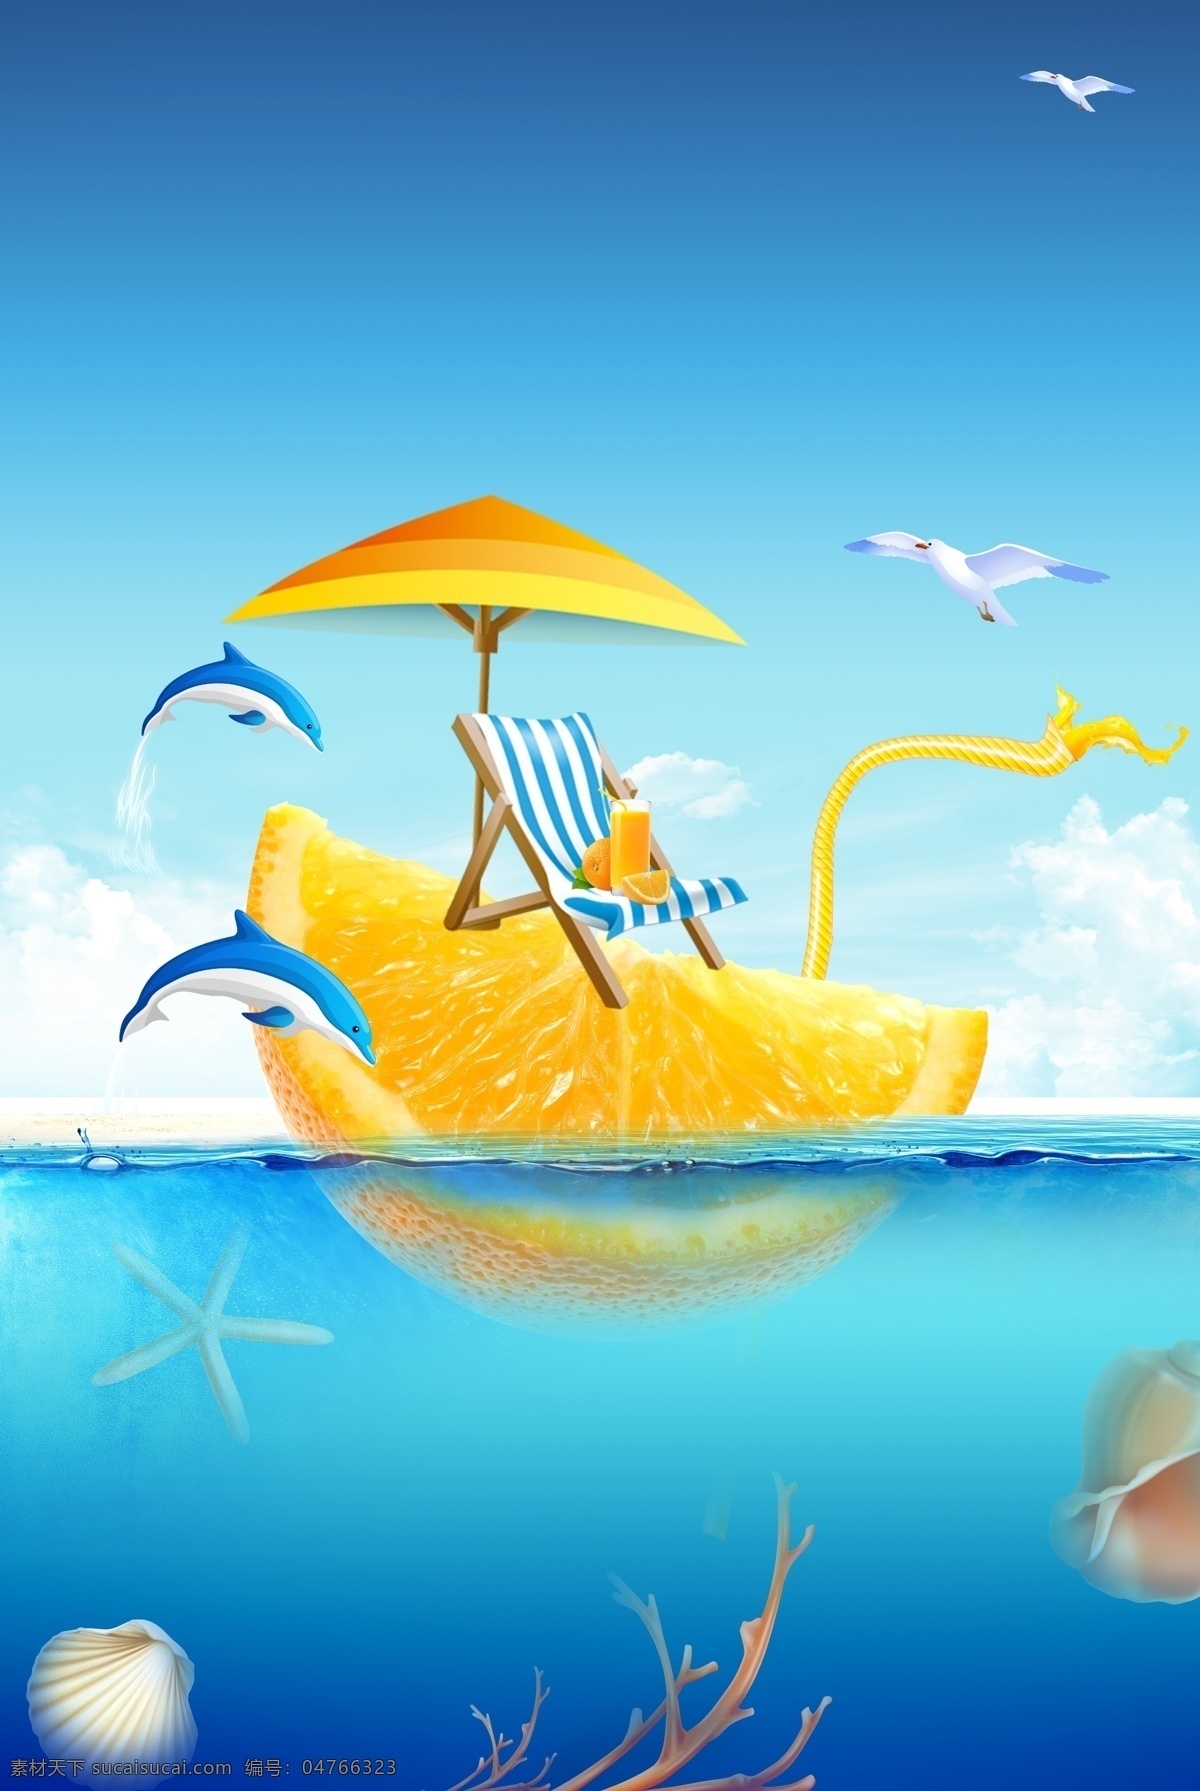 夏日 避暑 水果 背景 海报 夏天 夏季 降暑 饮品 雨伞 海上 蓝天